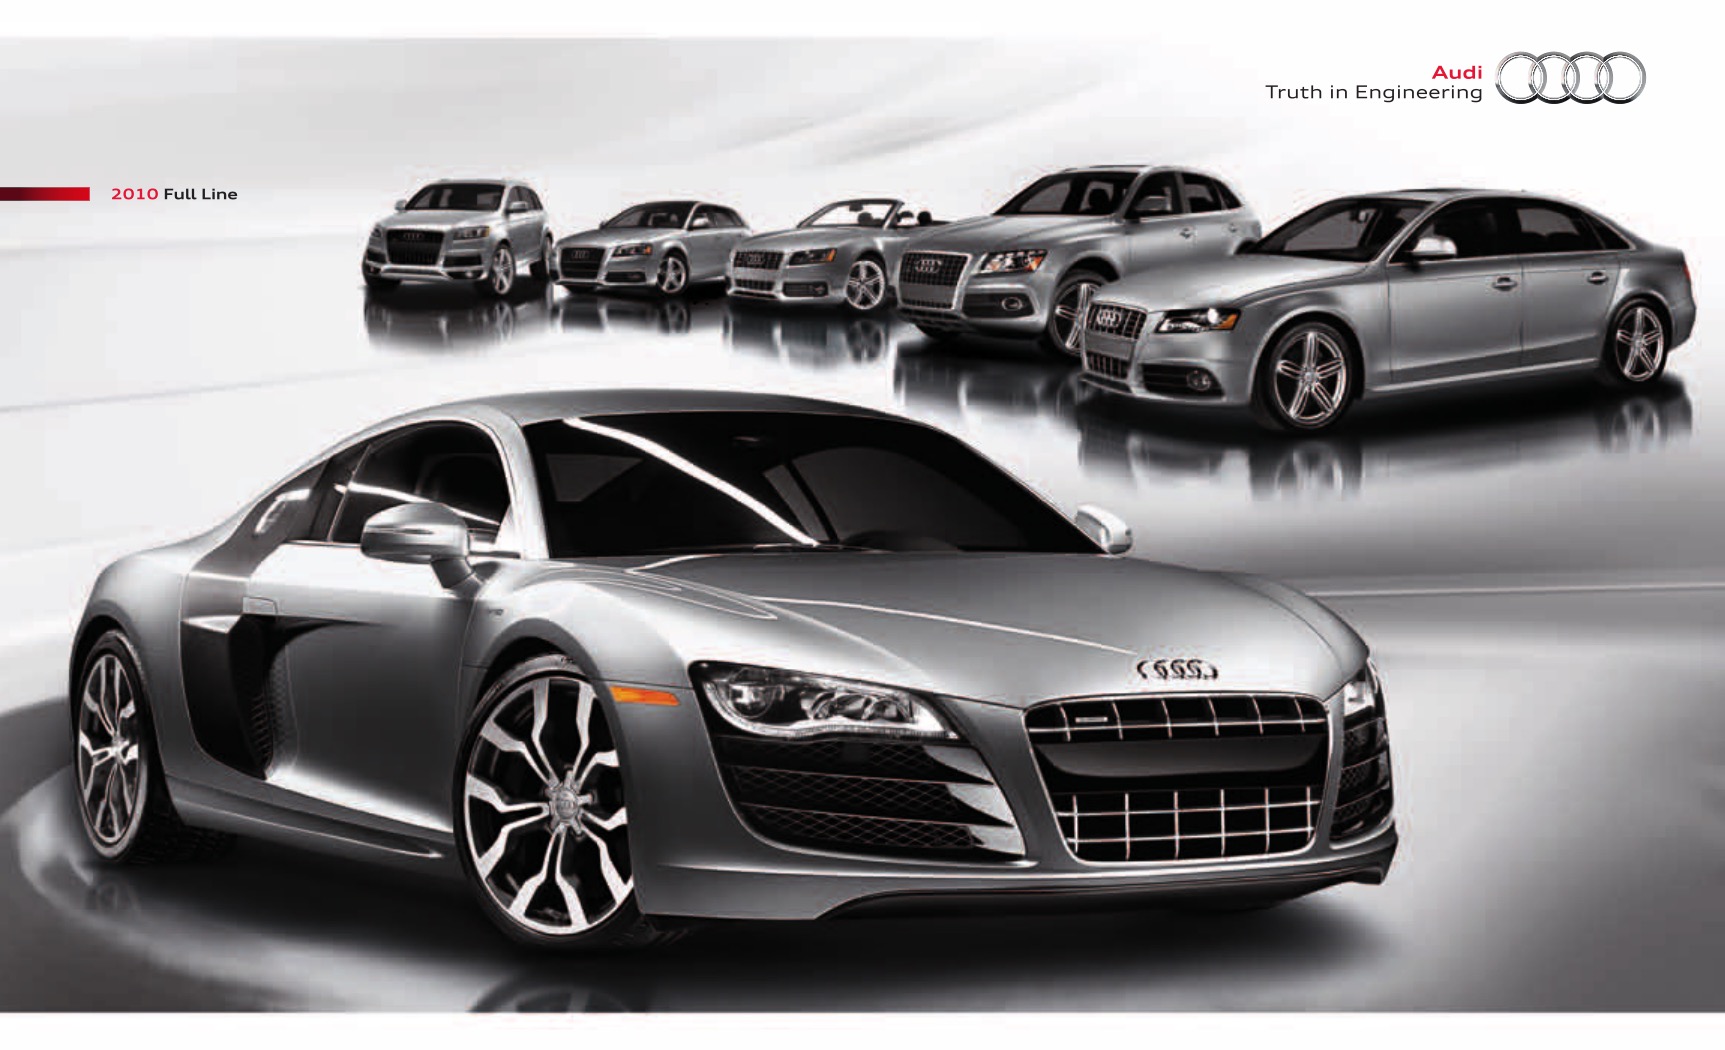 2010 Audi Full Line Brochure